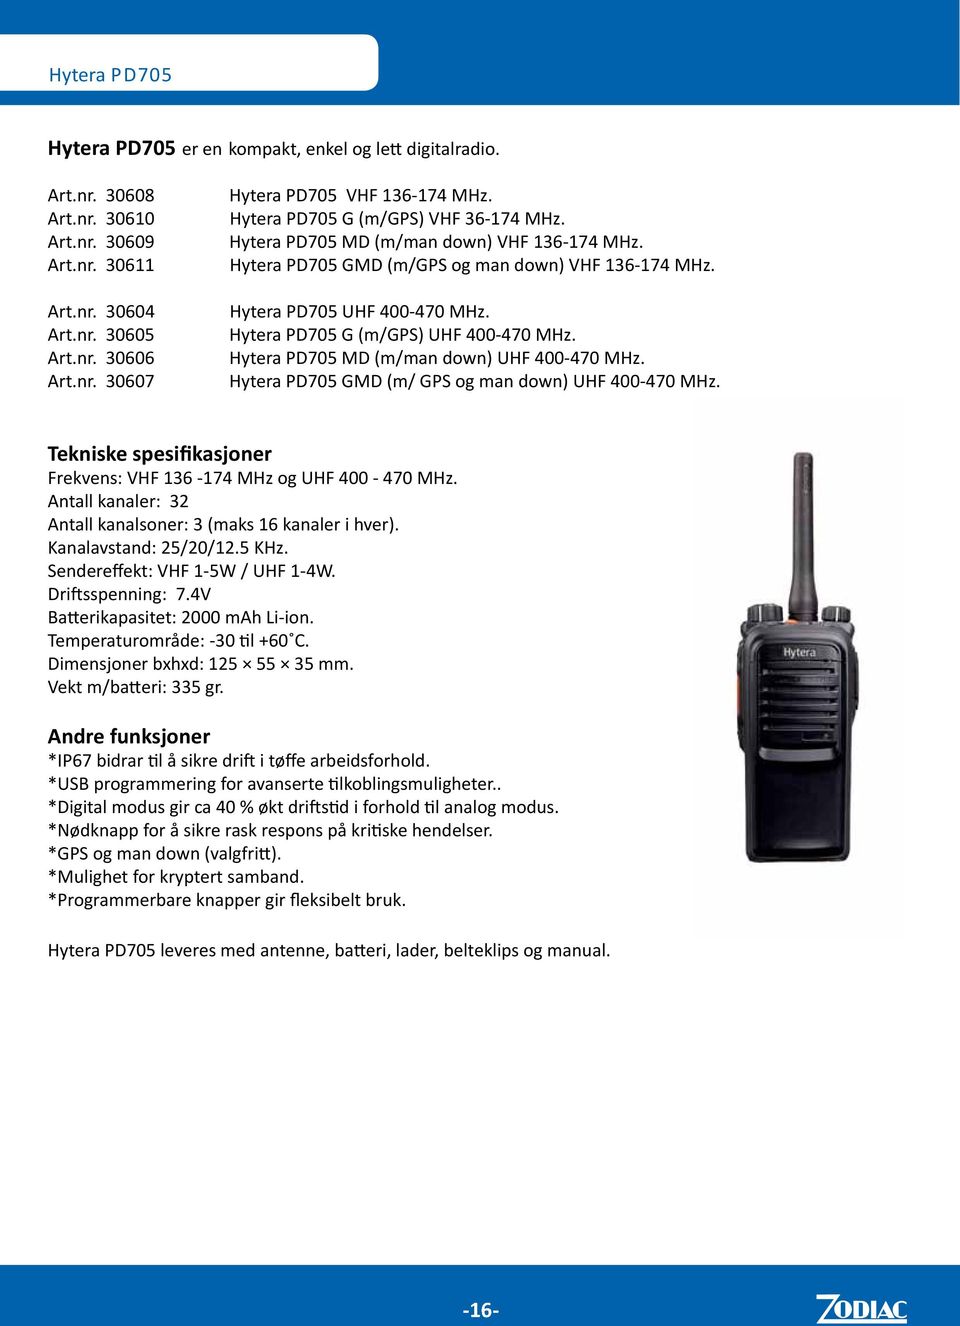 Hytera PD705 G (m/gps) UHF 400-470 MHz. Hytera PD705 MD (m/man down) UHF 400-470 MHz. Hytera PD705 GMD (m/ GPS og man down) UHF 400-470 MHz. Frekvens: VHF 136-174 MHz og UHF 400-470 MHz.